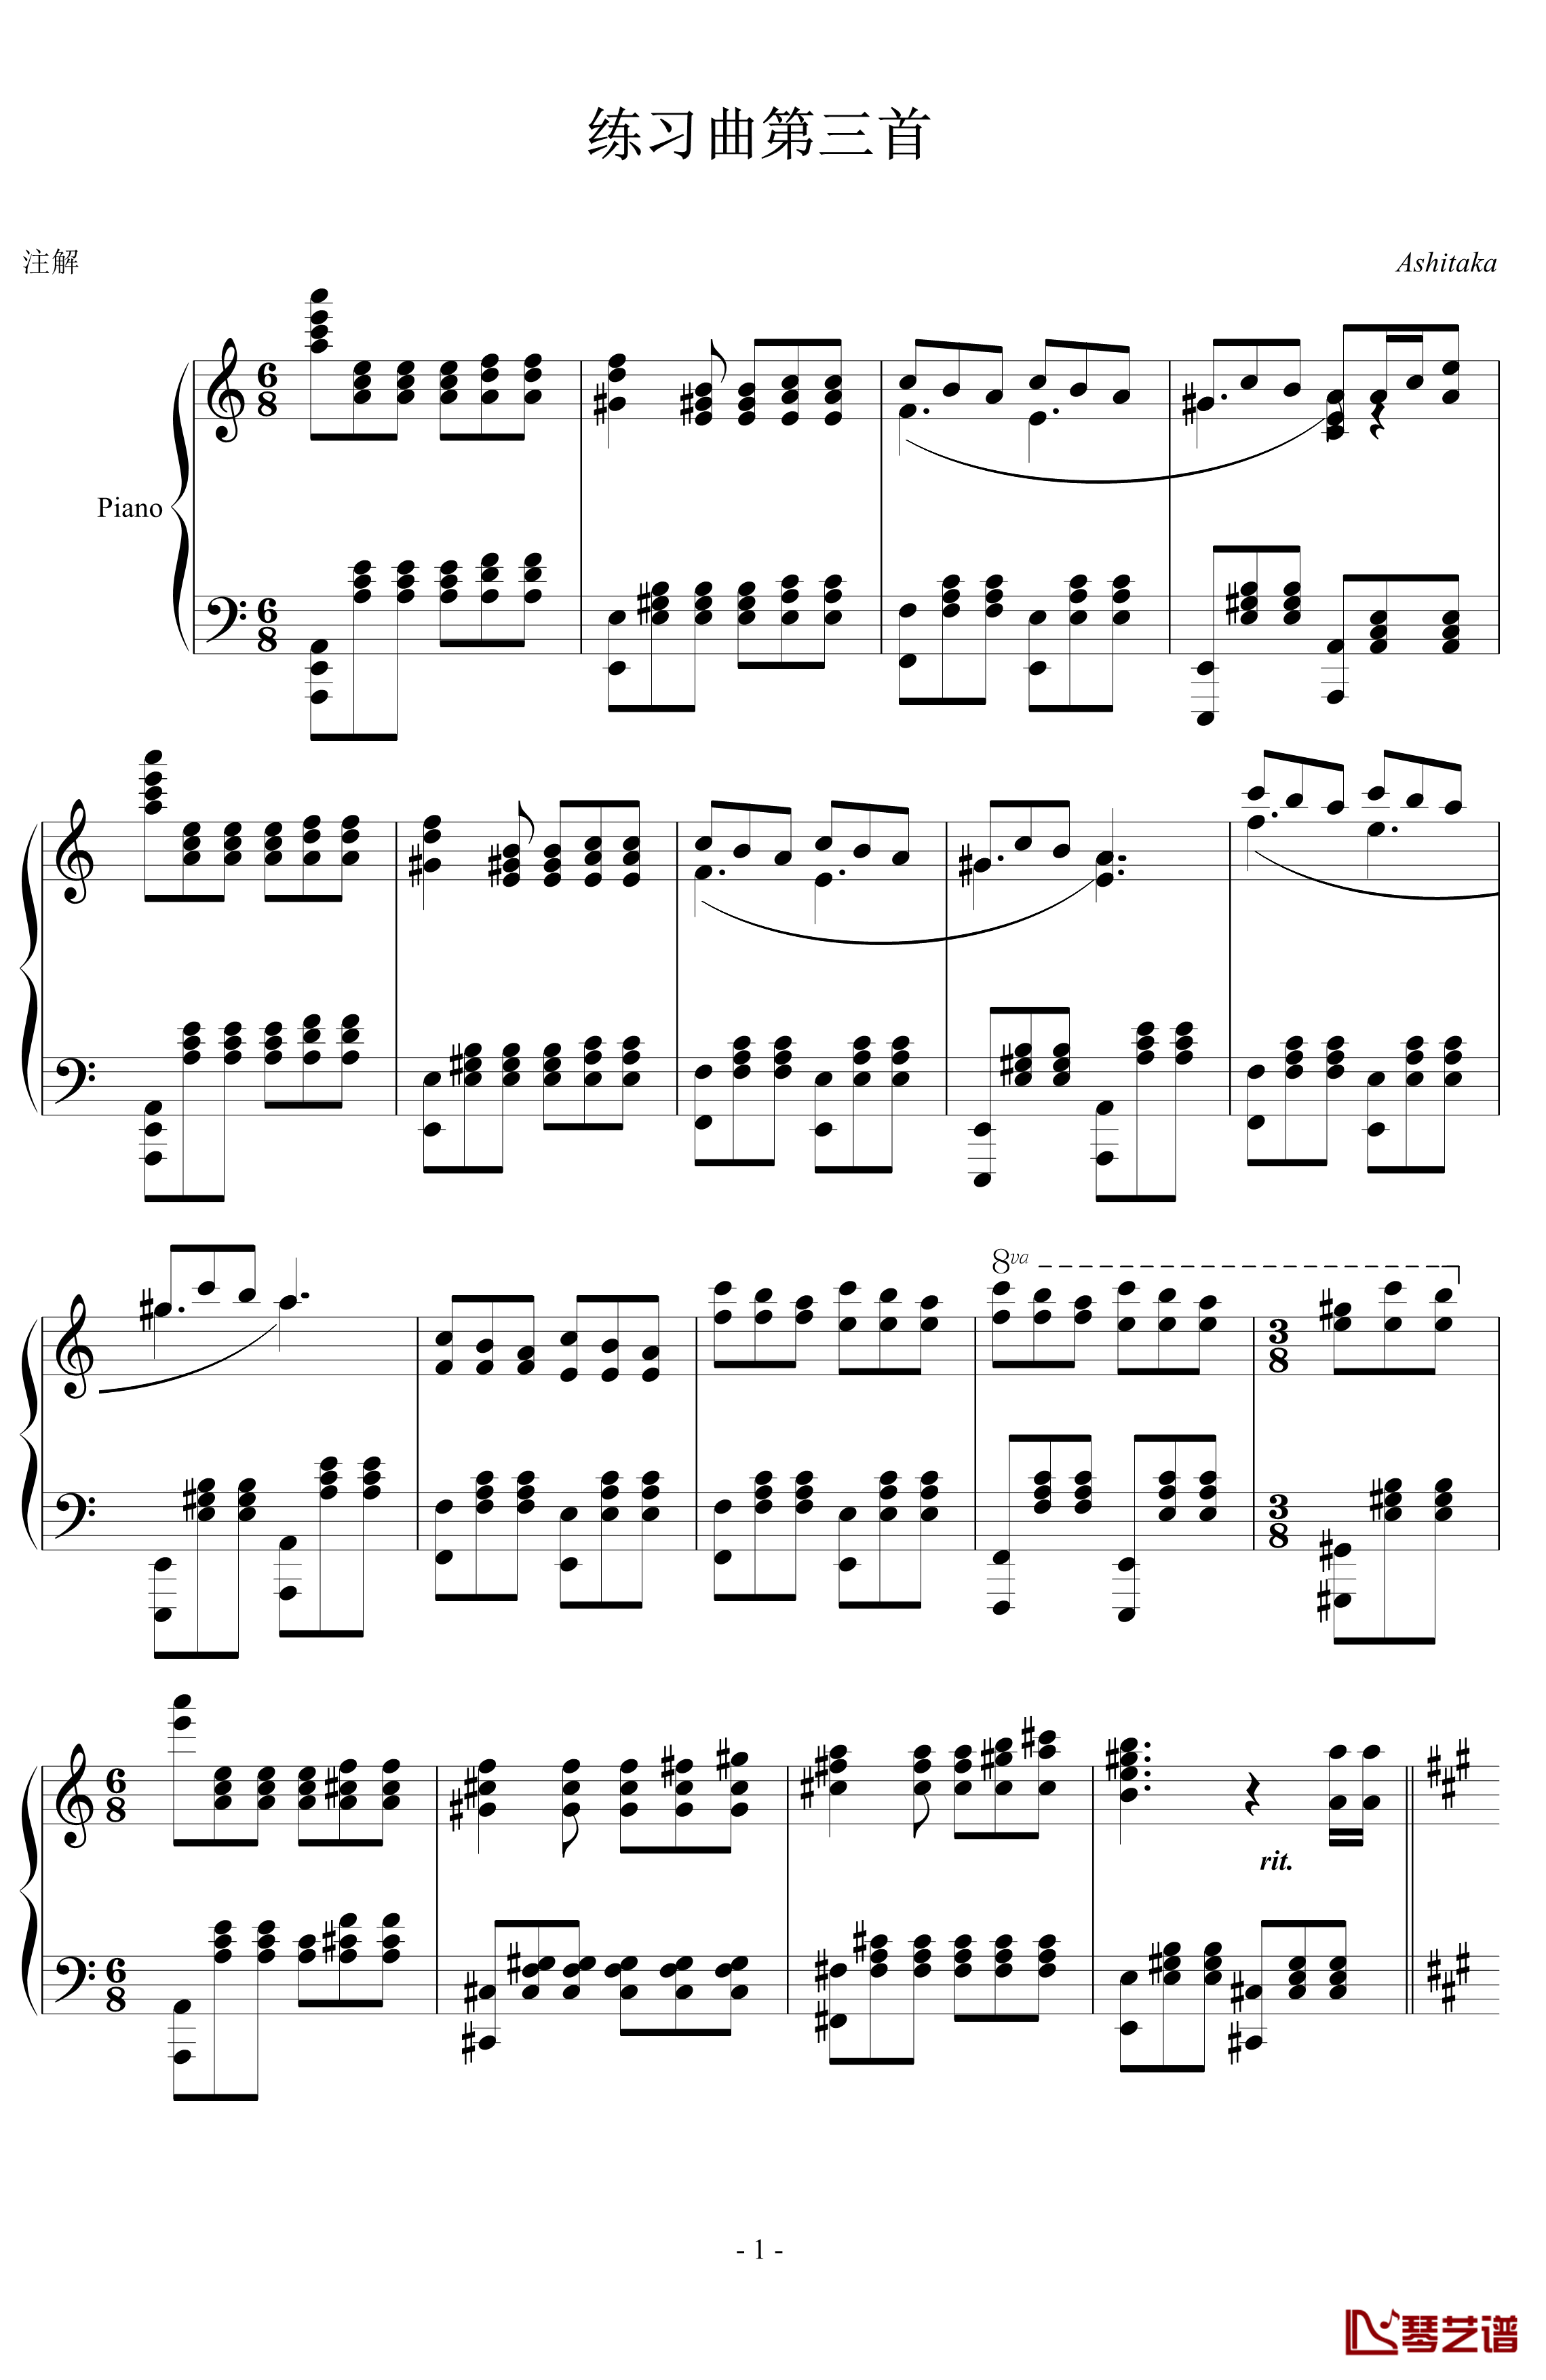 进阶练习曲第三首钢琴谱-Ashitaka1